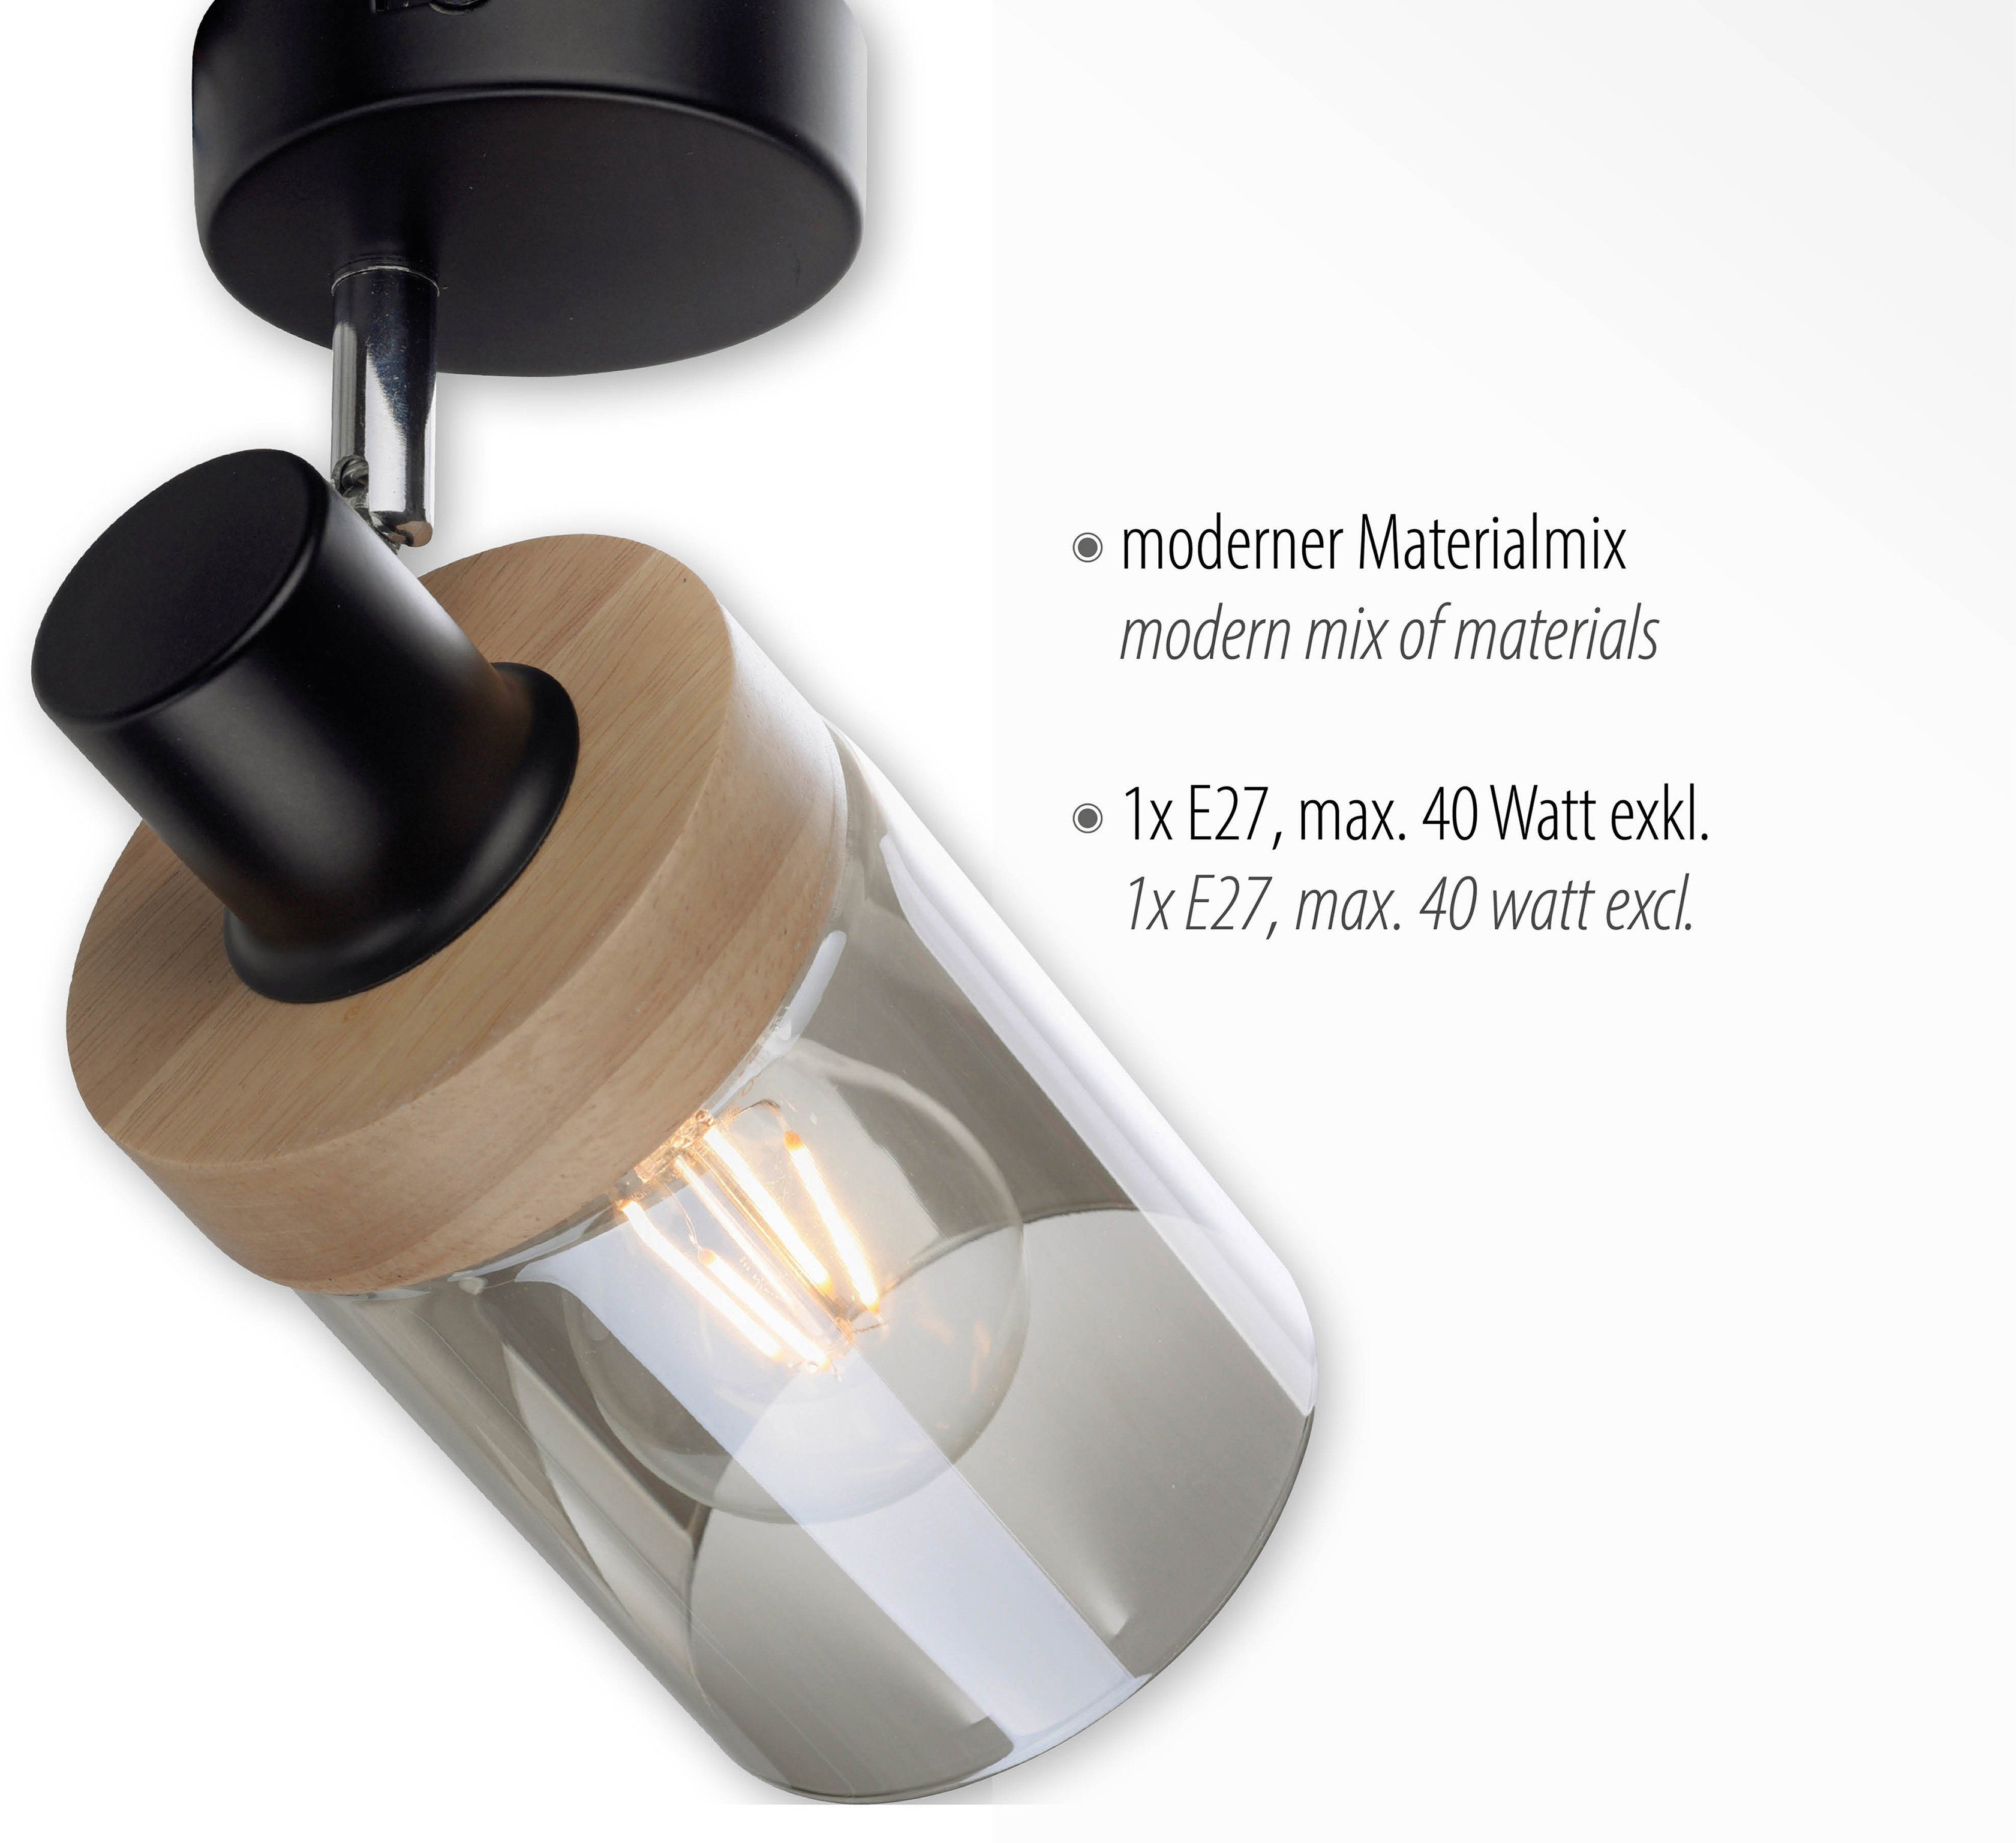 Home affaire Leuchtmittel Wandleuchte für Glas, Holz, E27 Rauchglas, Leuchtmittel, geeignet Tendon, Wandlampe, - ohne